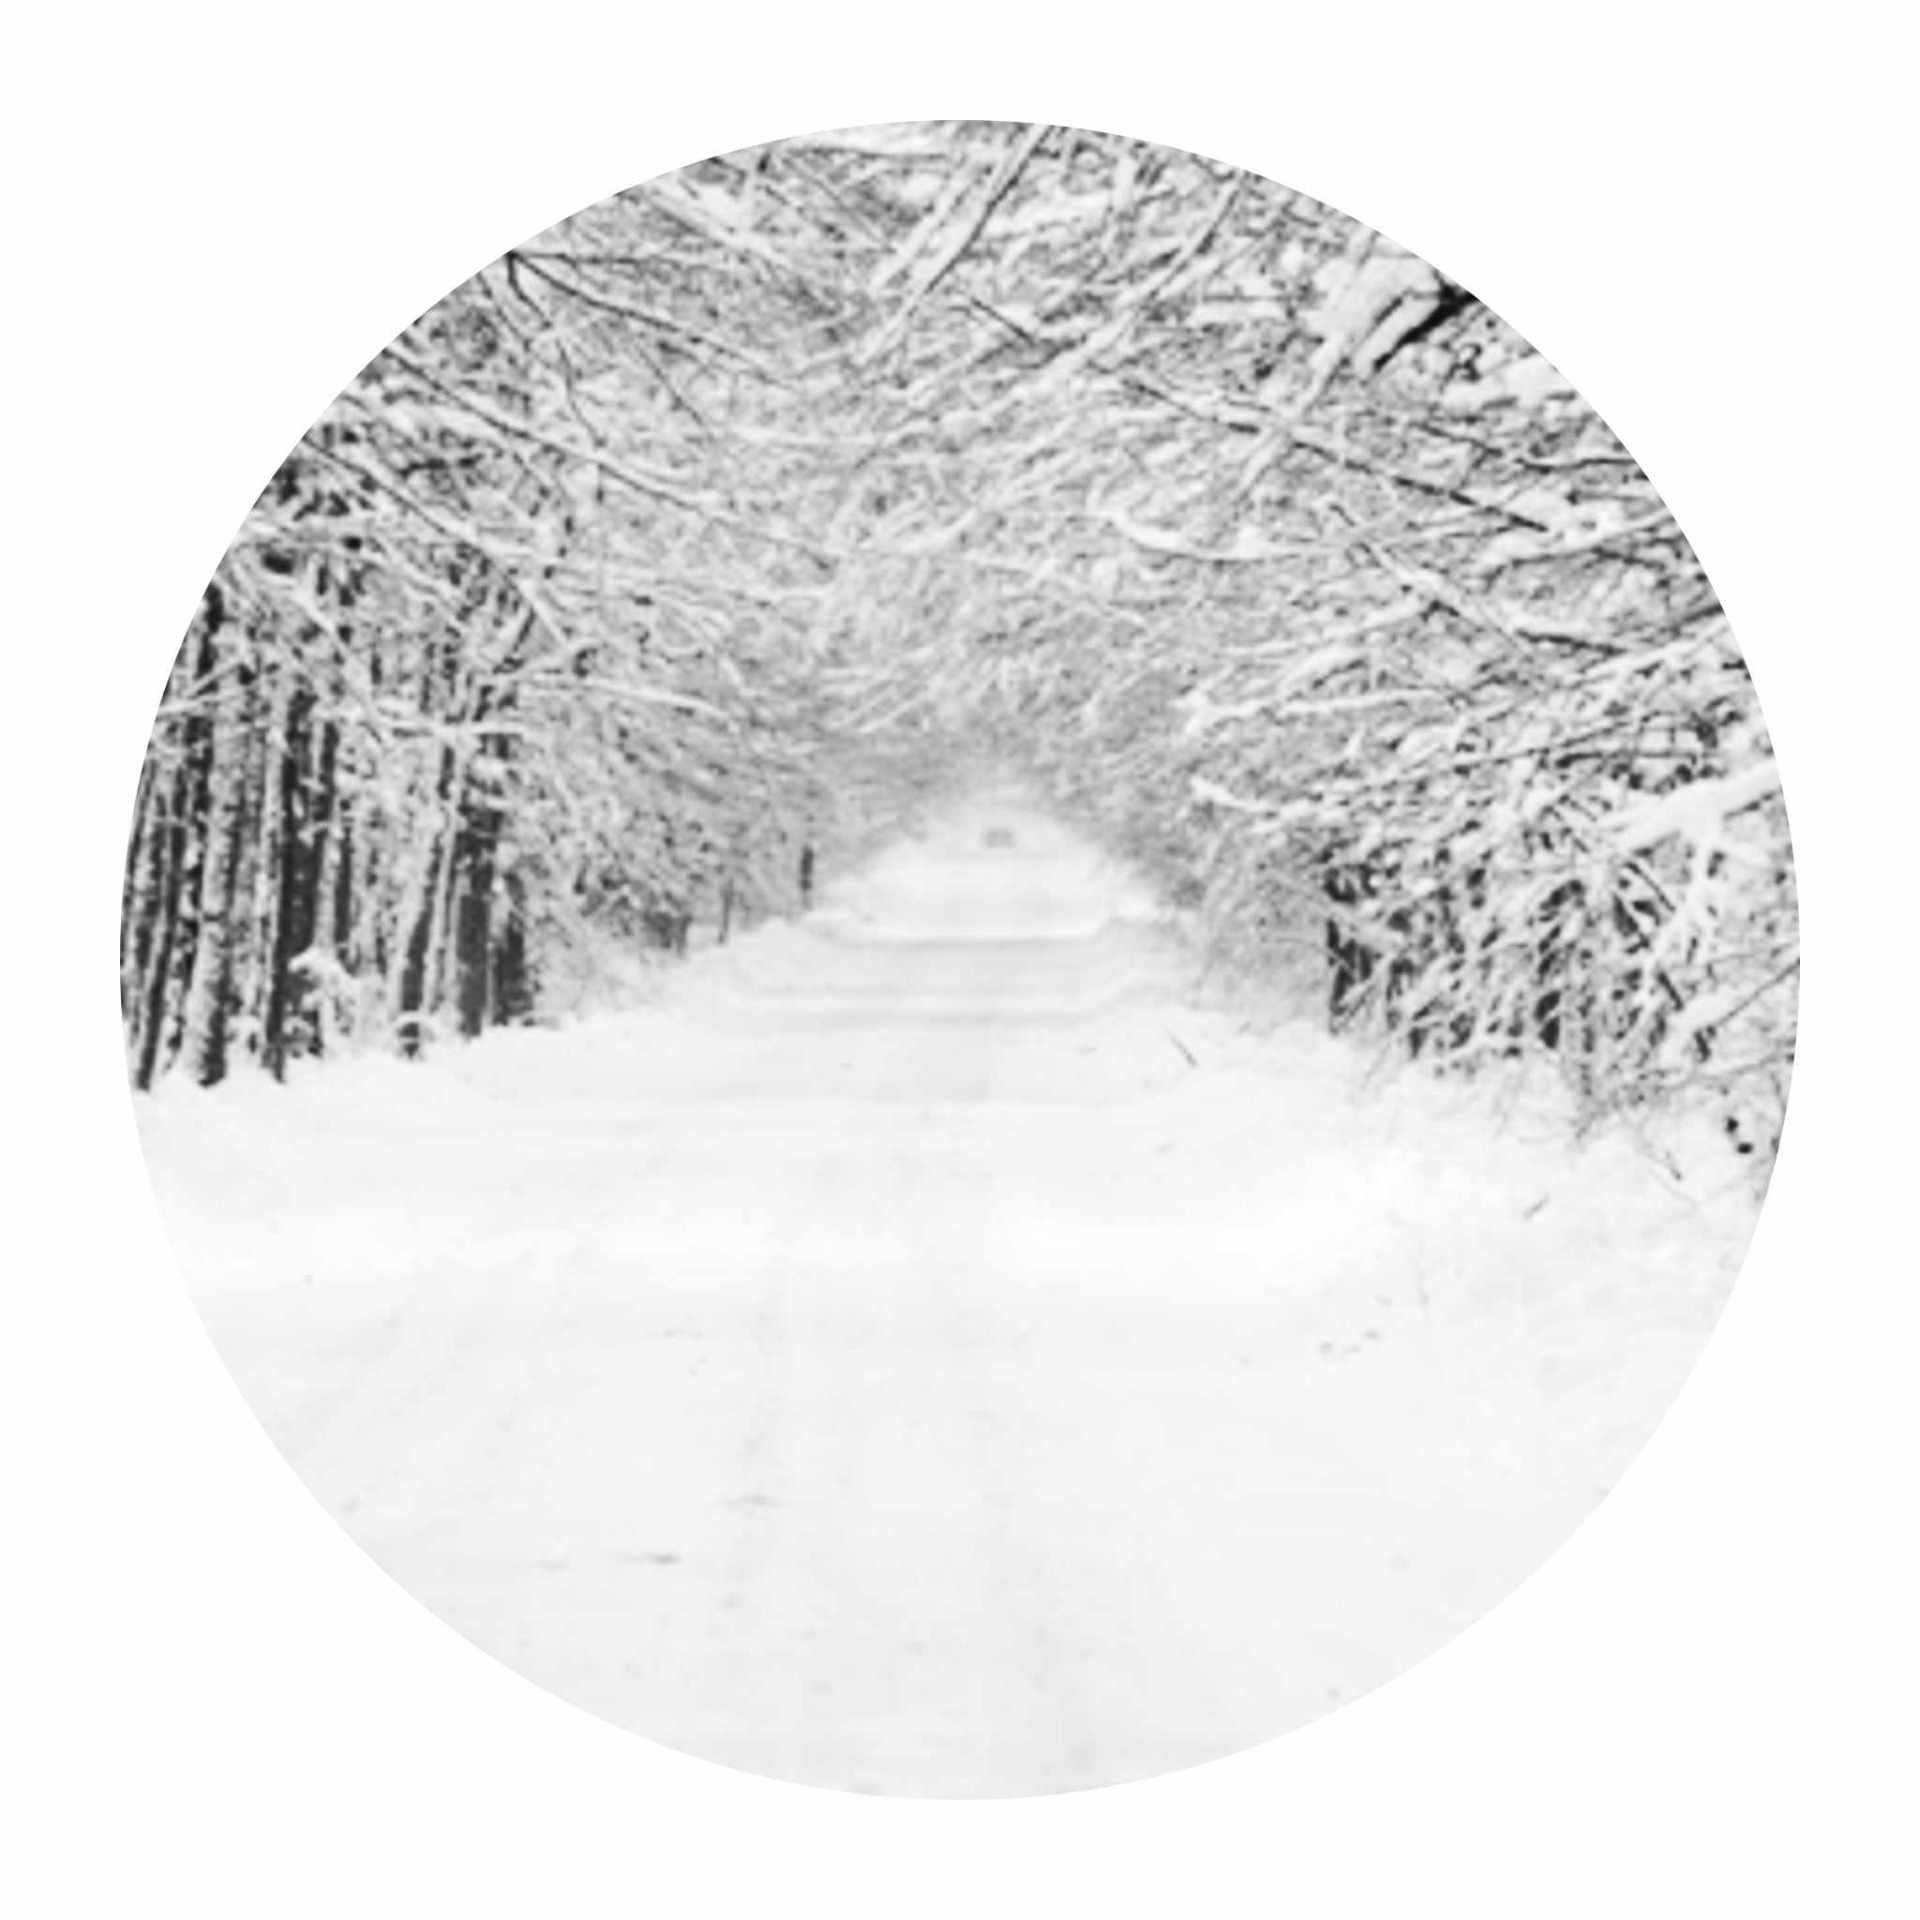 Zdjęcia zimowego krajobrazu wykonane i obrobione  przez uczniów